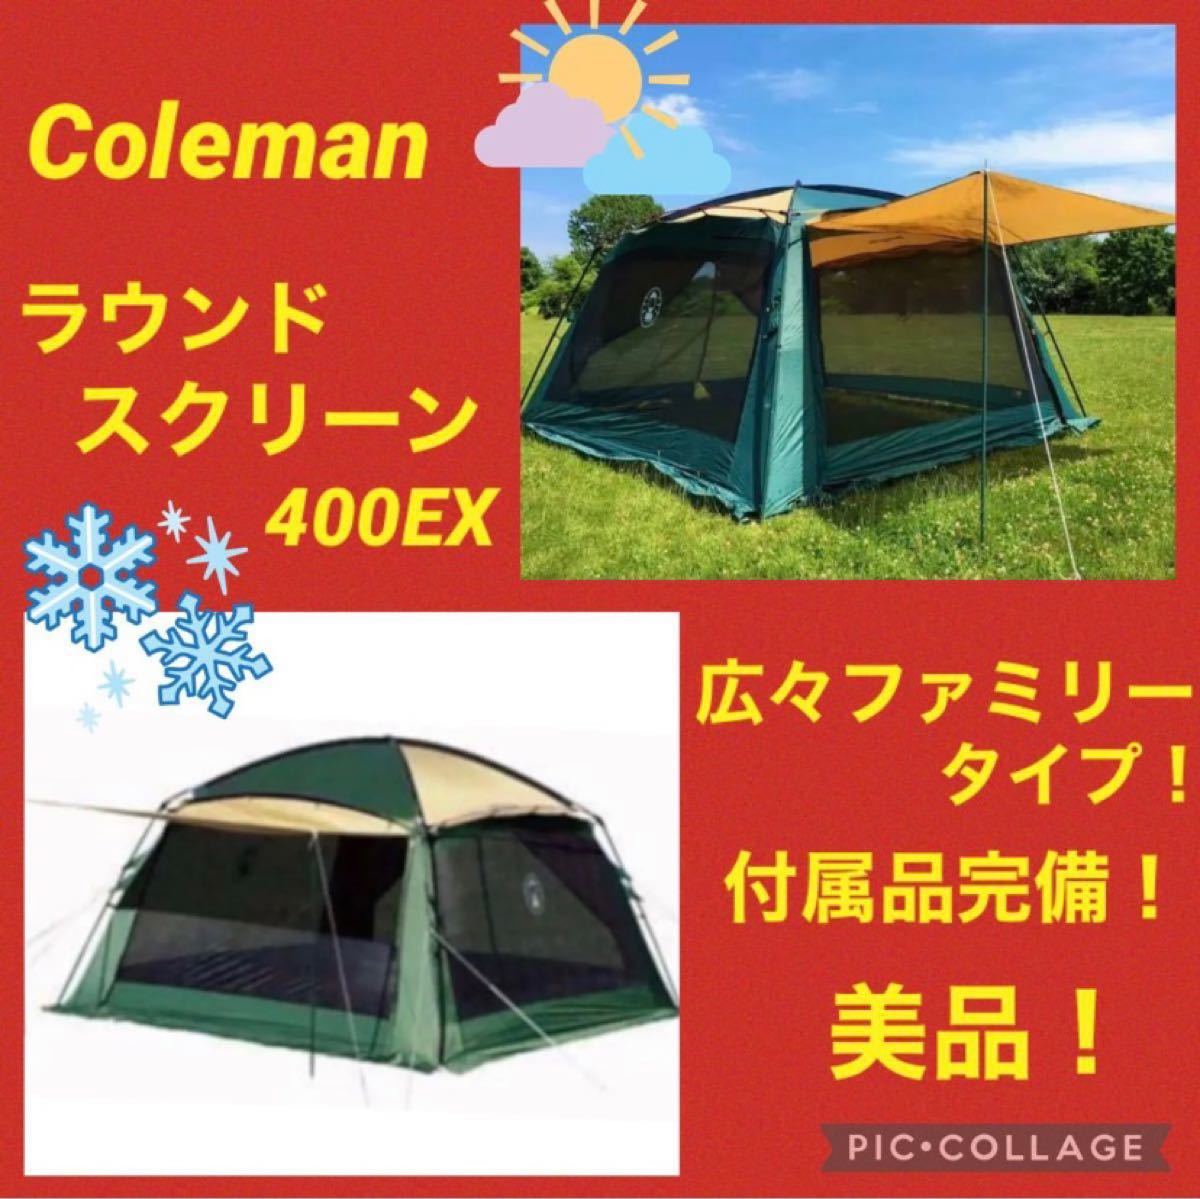 コールマン(Coleman) ラウンドスクリーン400EX アウトドア テント 